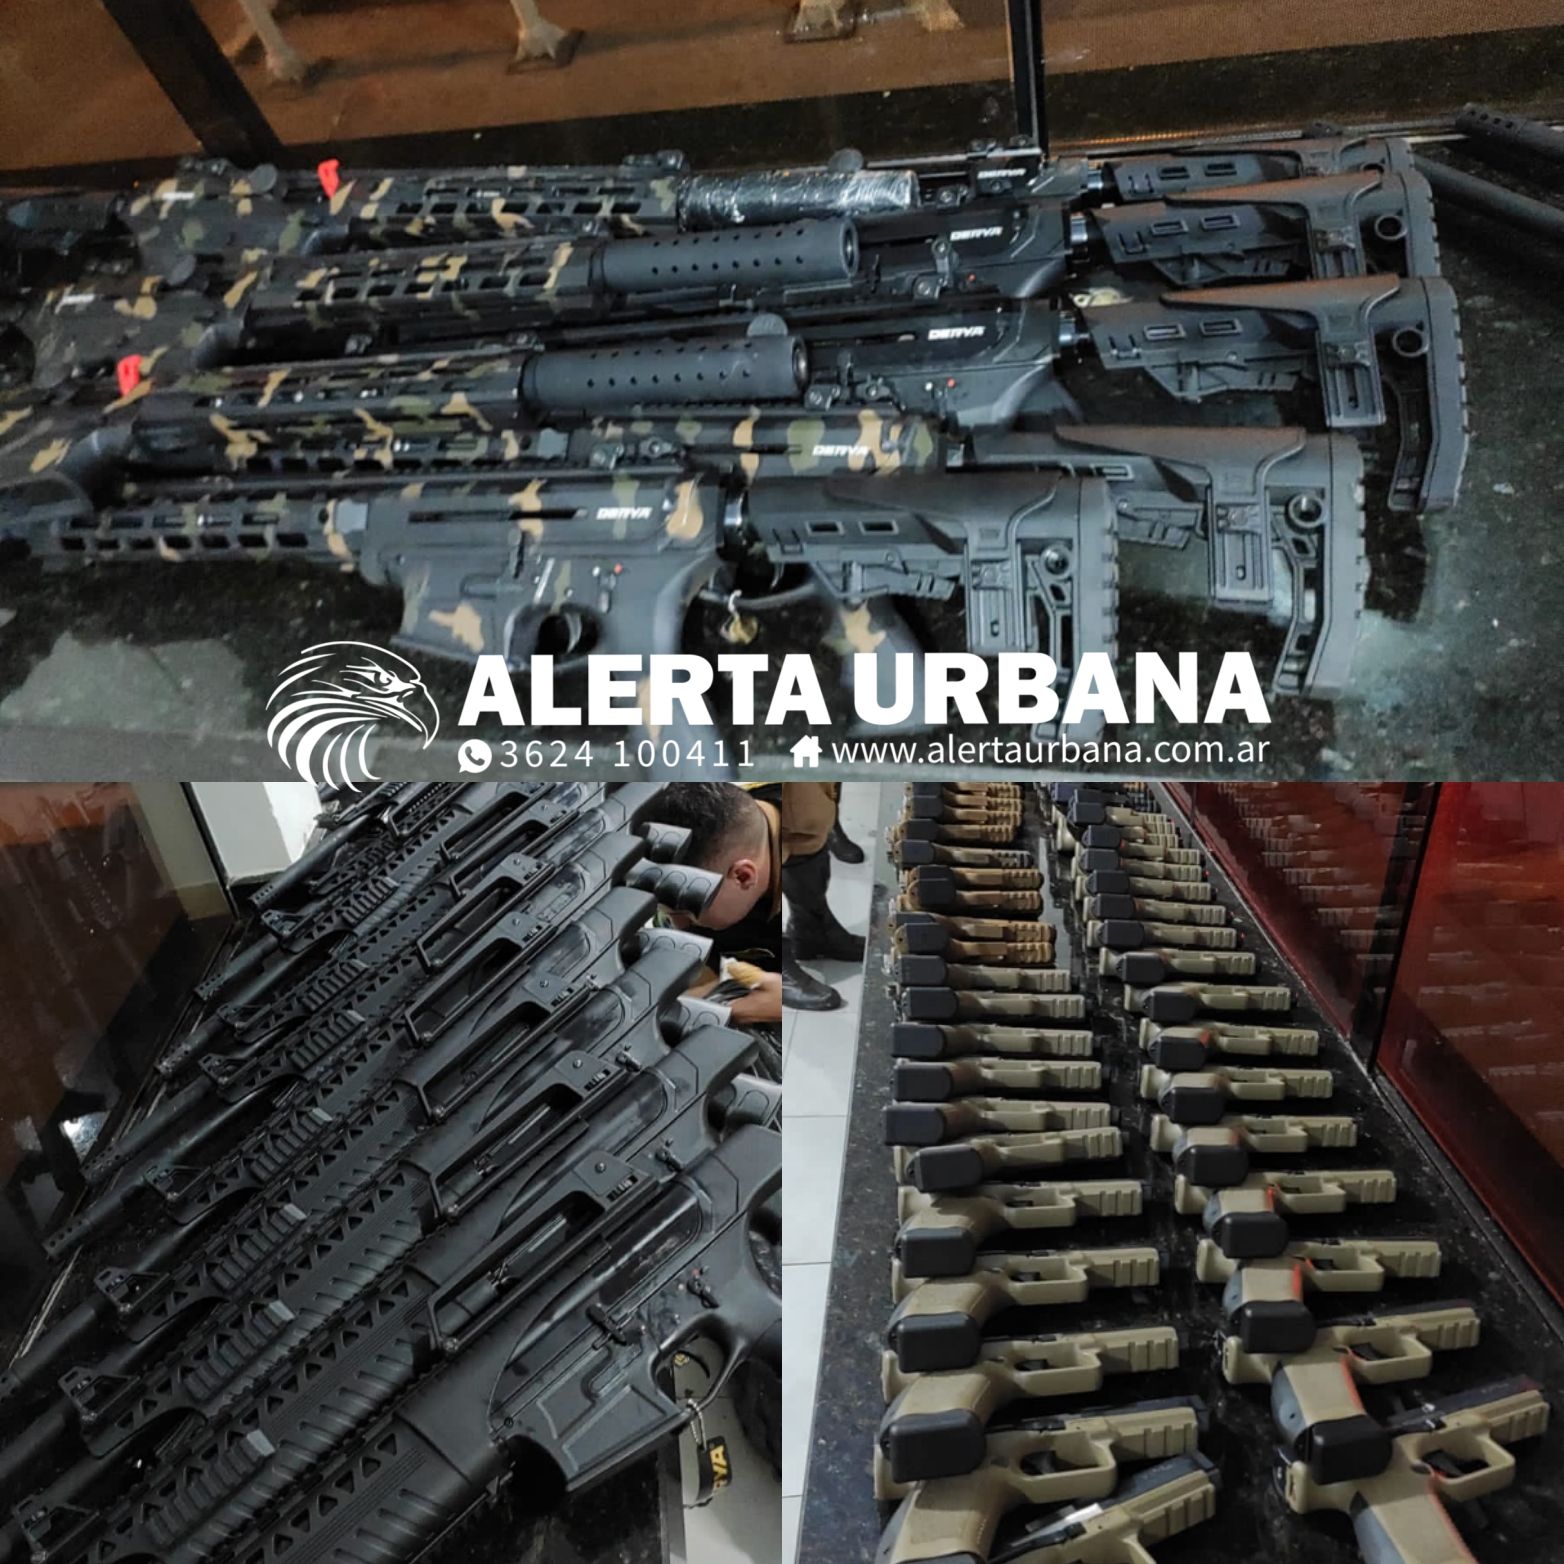 La policía brasileña impidió que ingrese un cargamento de armas del PCC en Argentina